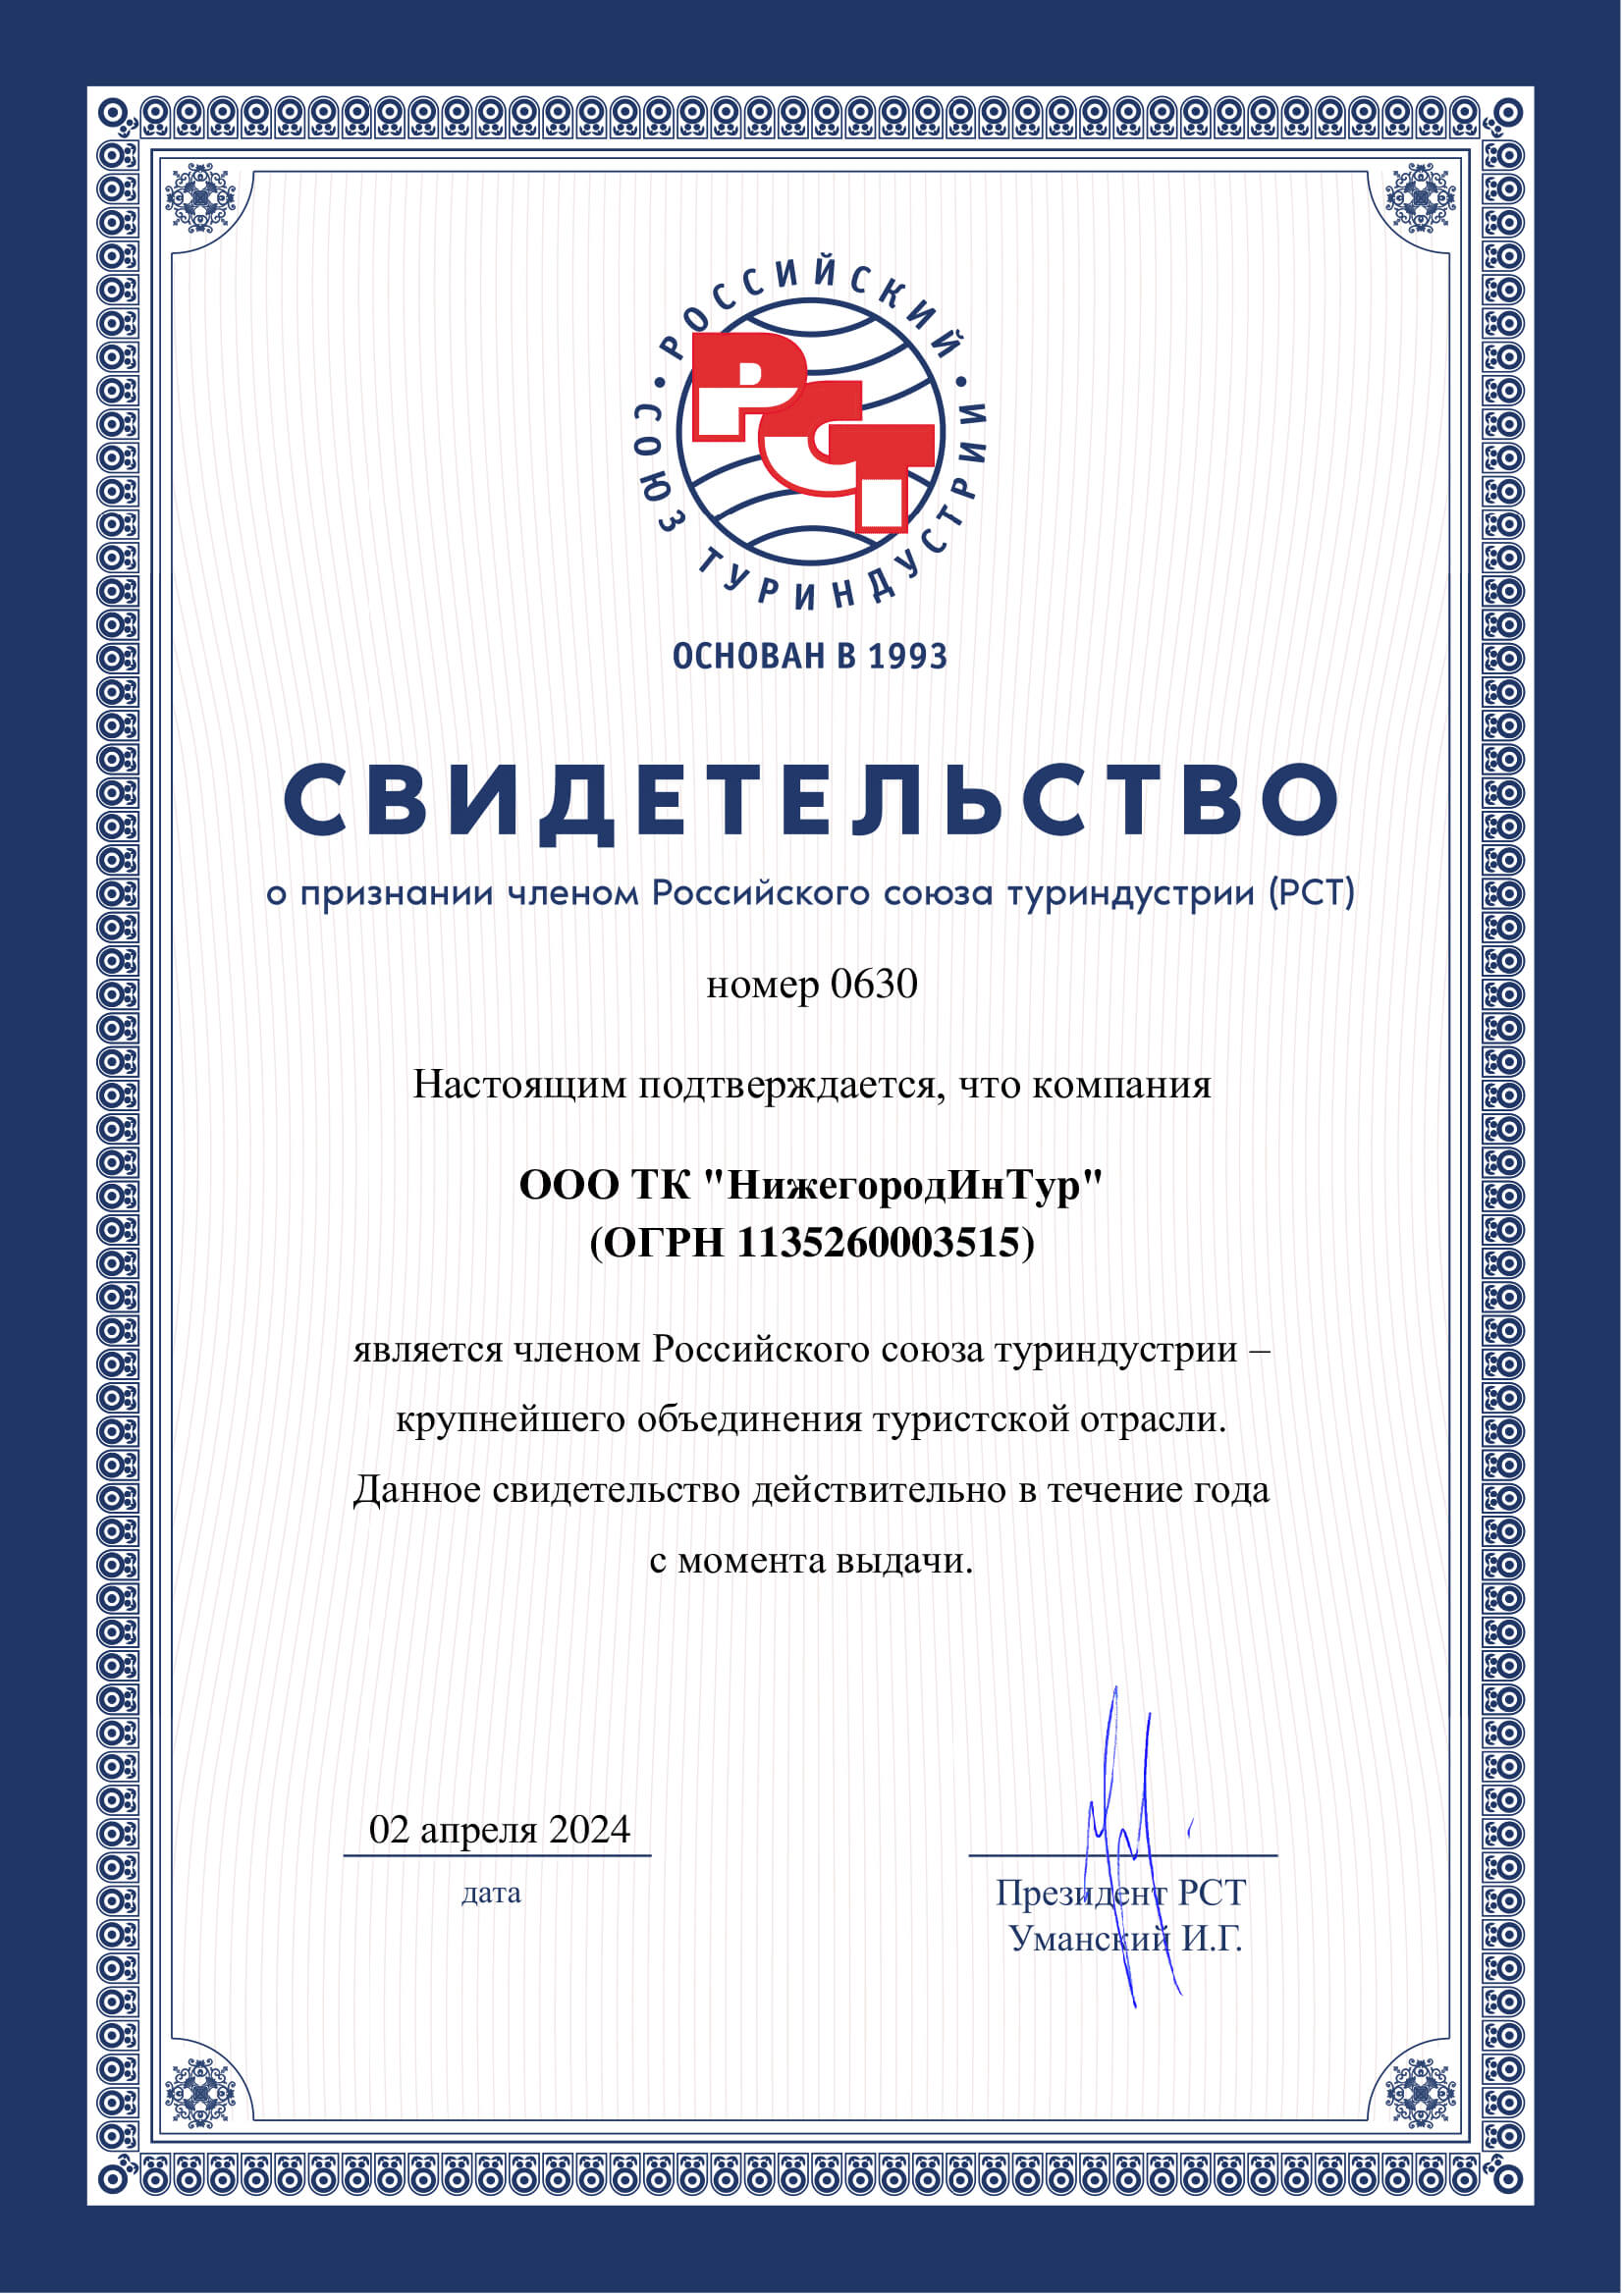 Члены Российского Союза туриндустрии (РСТ)